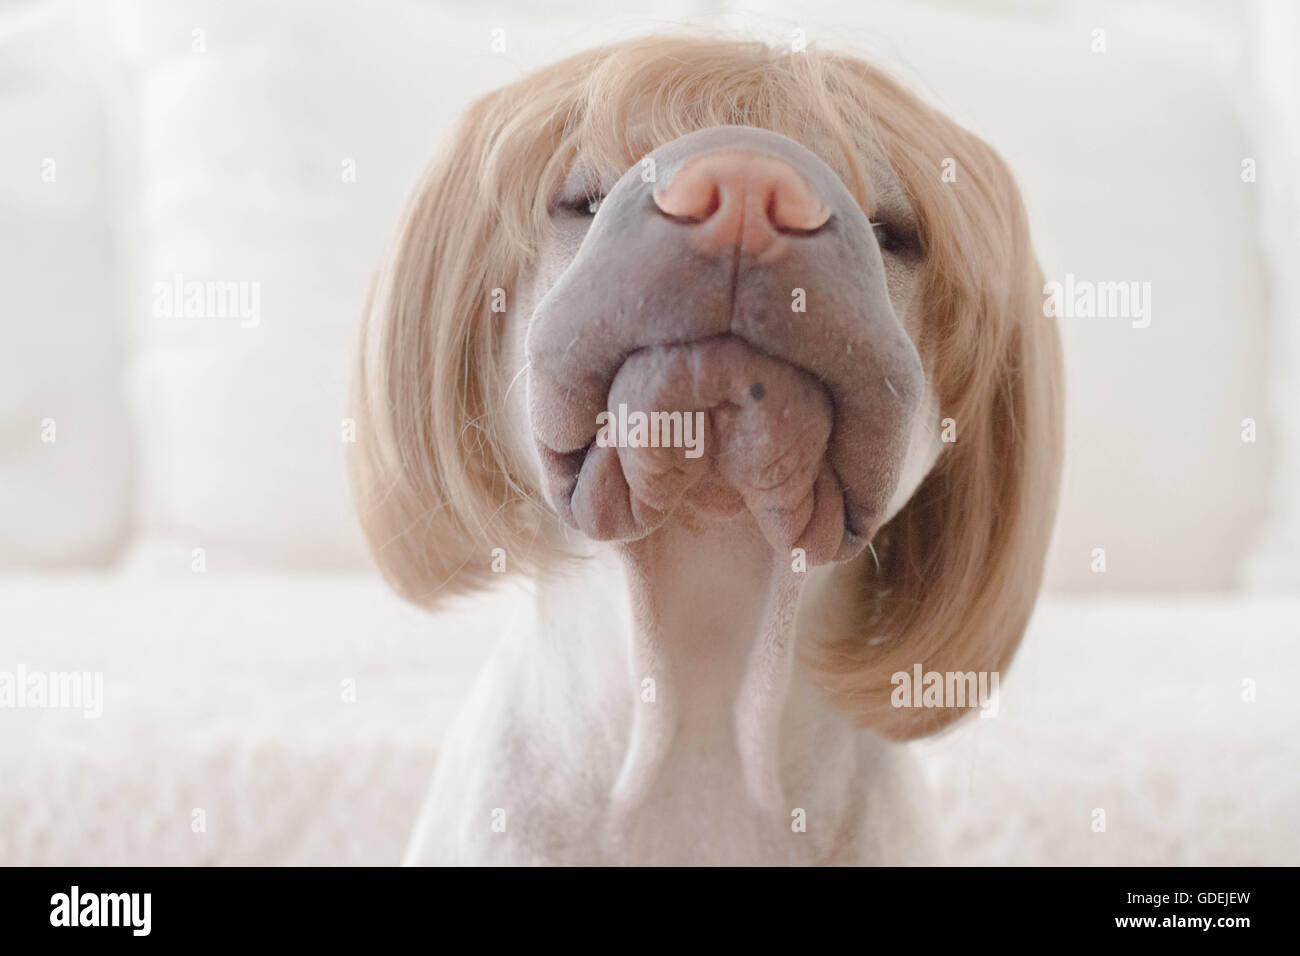 Shar pei dog wearing a short hair bob wig Stock Photo